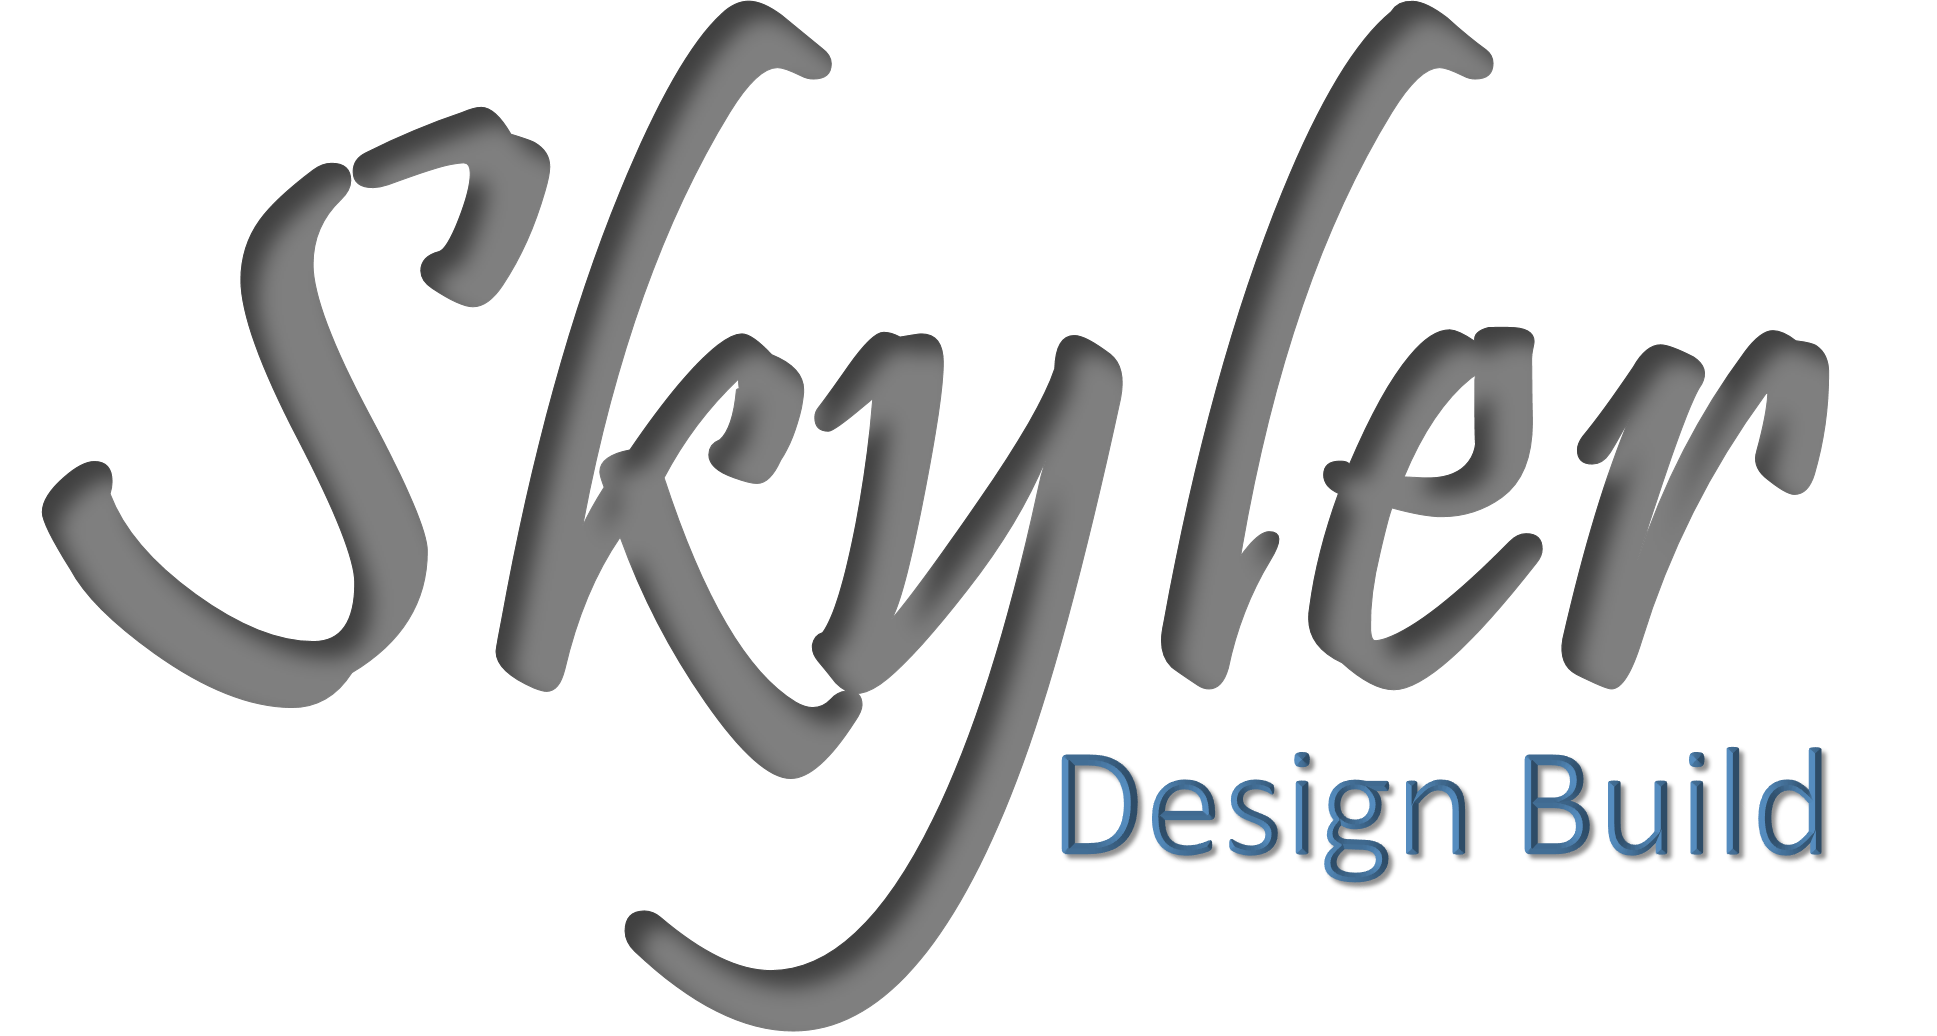 Skyler Design Build